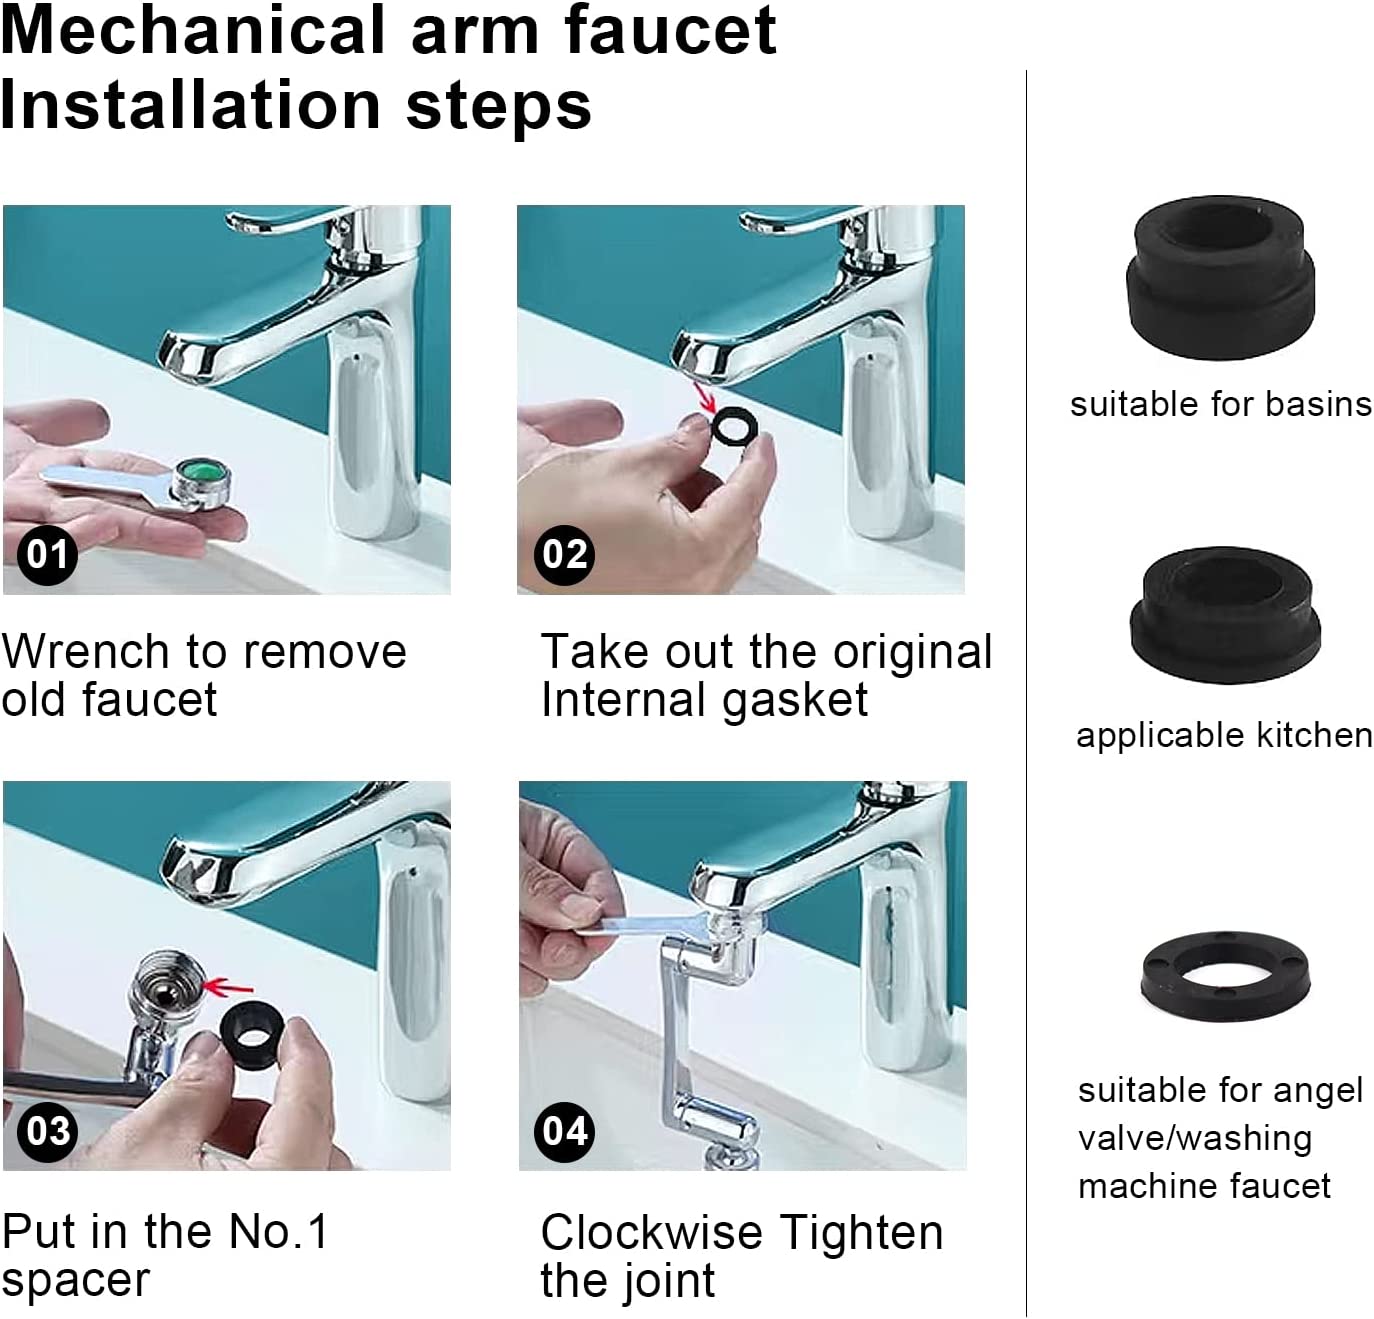 Extension de robinet pivotant à 1080 degrés, robinet pivotant flexible  Aerator Filter Faucet pour évier de cuisine Lavage du visage de salle de  bain (mode unique)